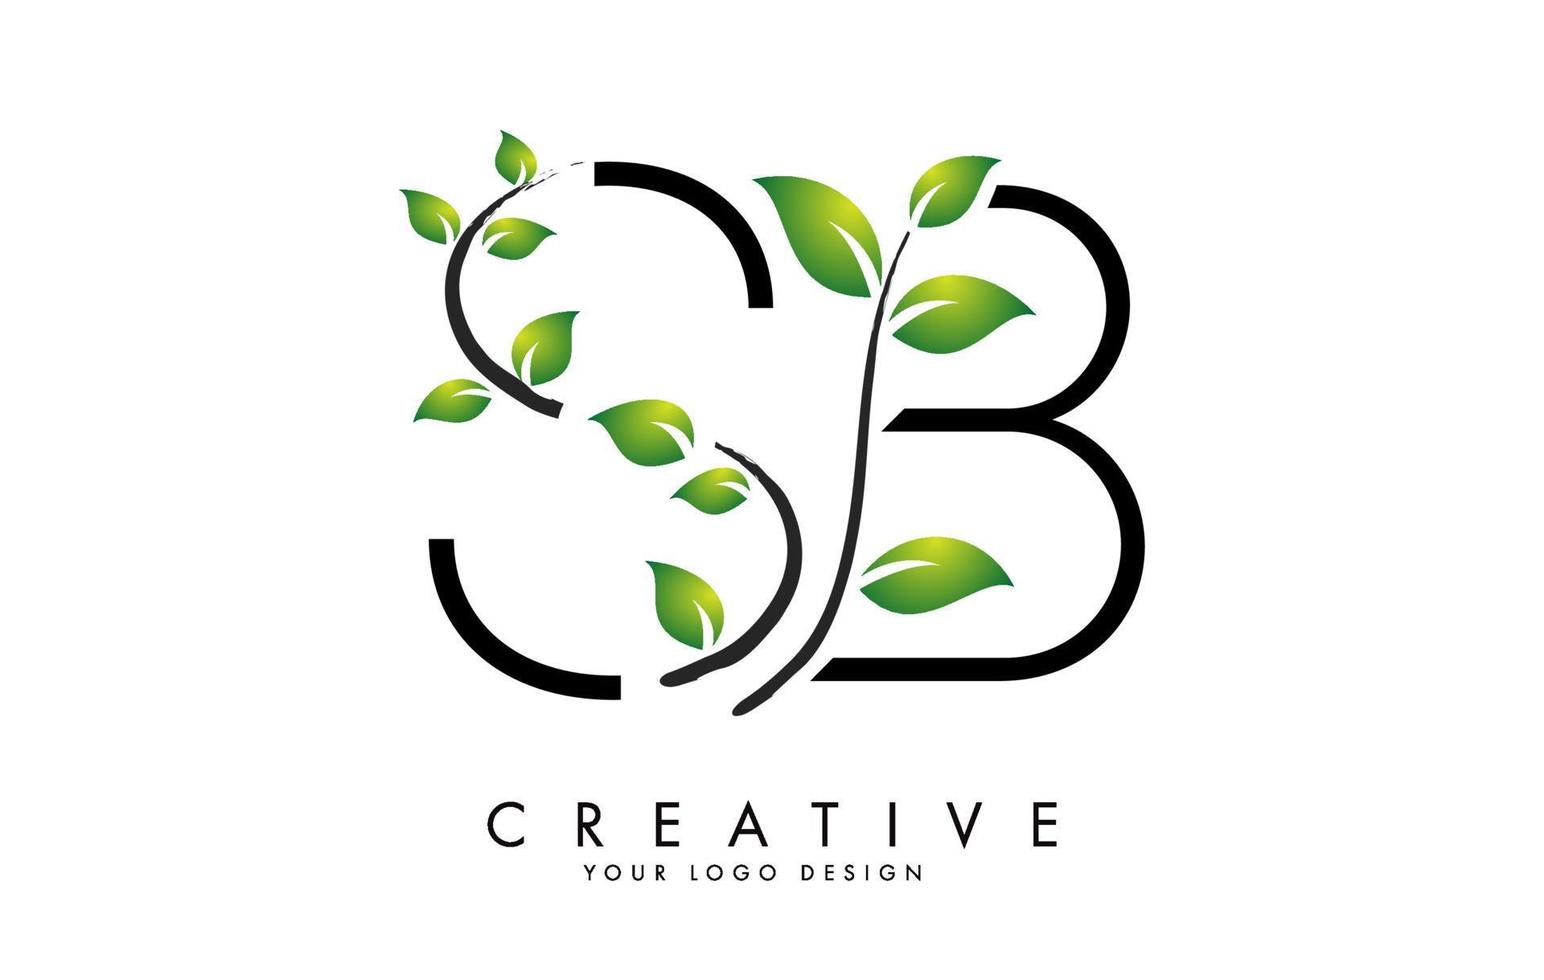 hojas de letras sb diseño de logotipo sb con hojas verdes en una rama. Letras sb sb con concepto de naturaleza. vector